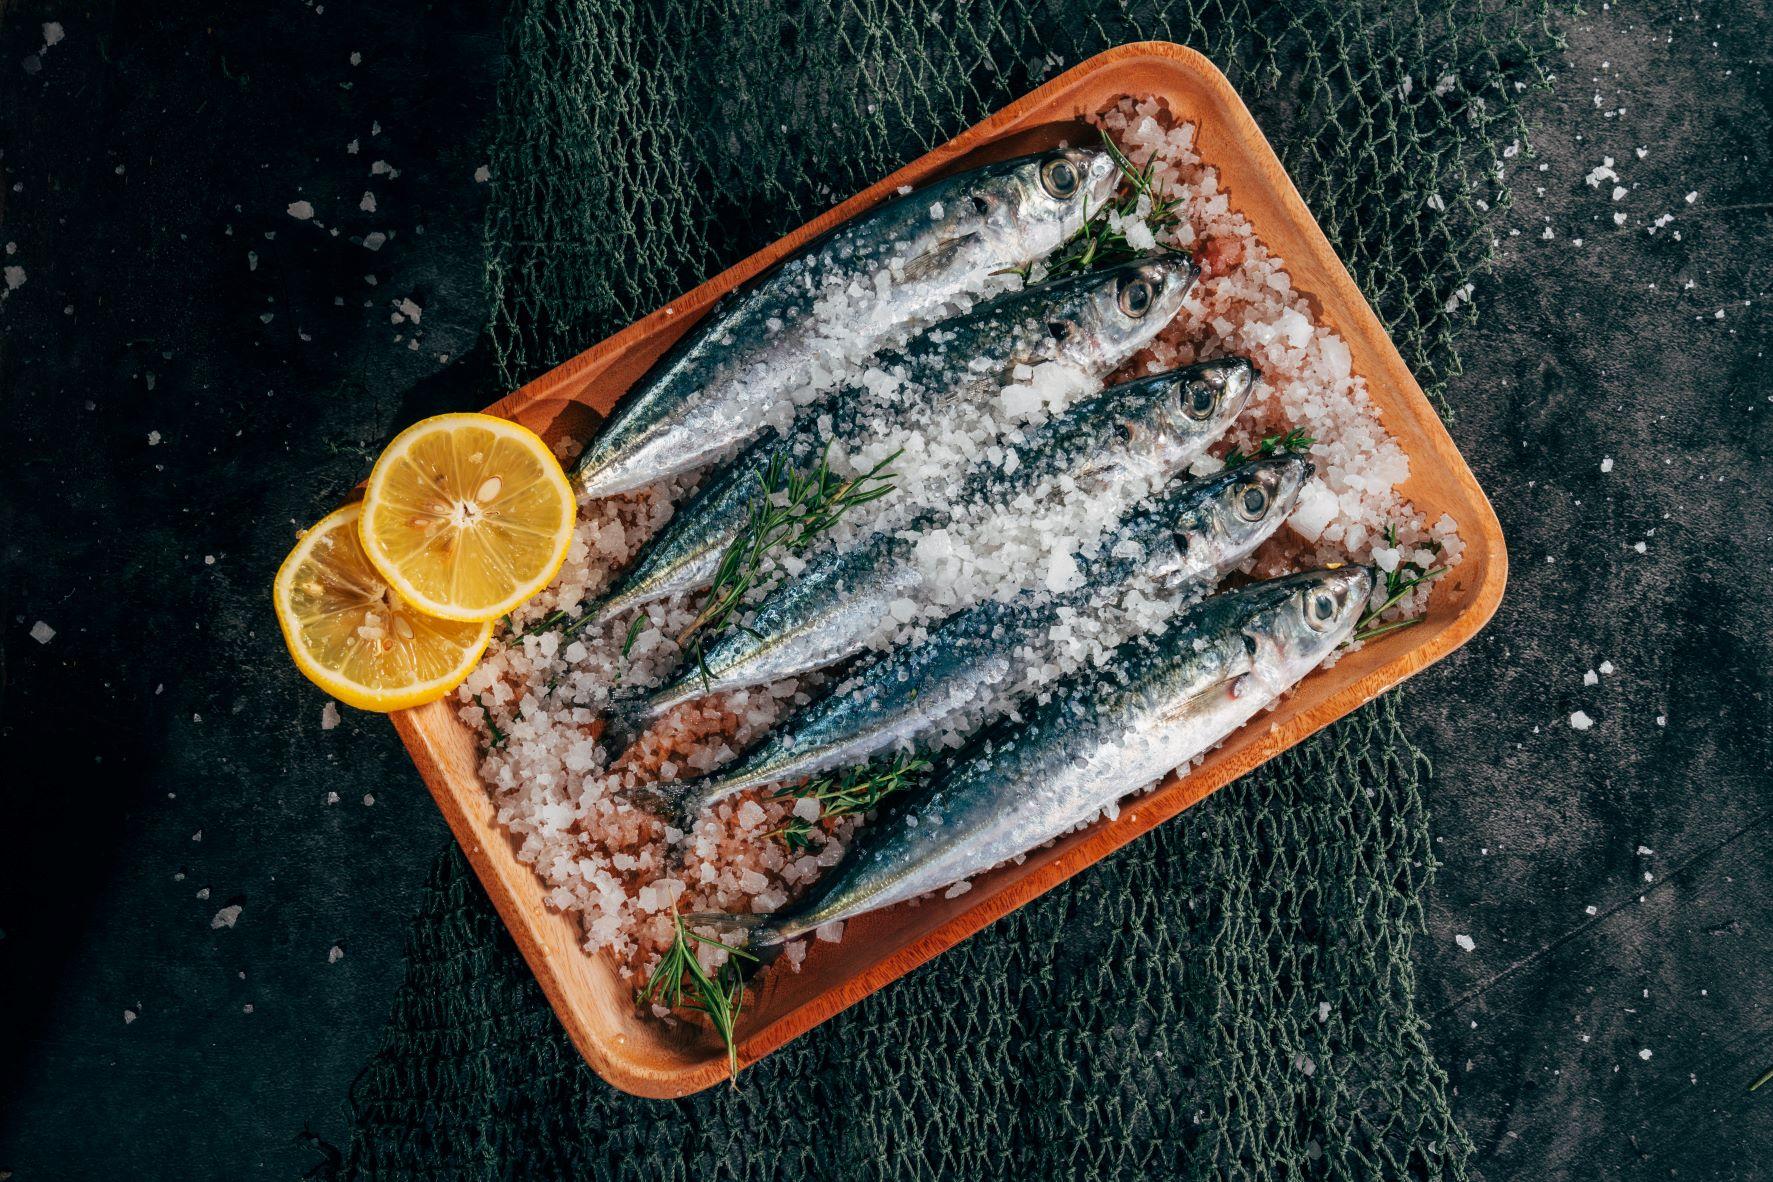 Las sardinas son el pescado más consumido durante el verano en España (Foto: Unplash)